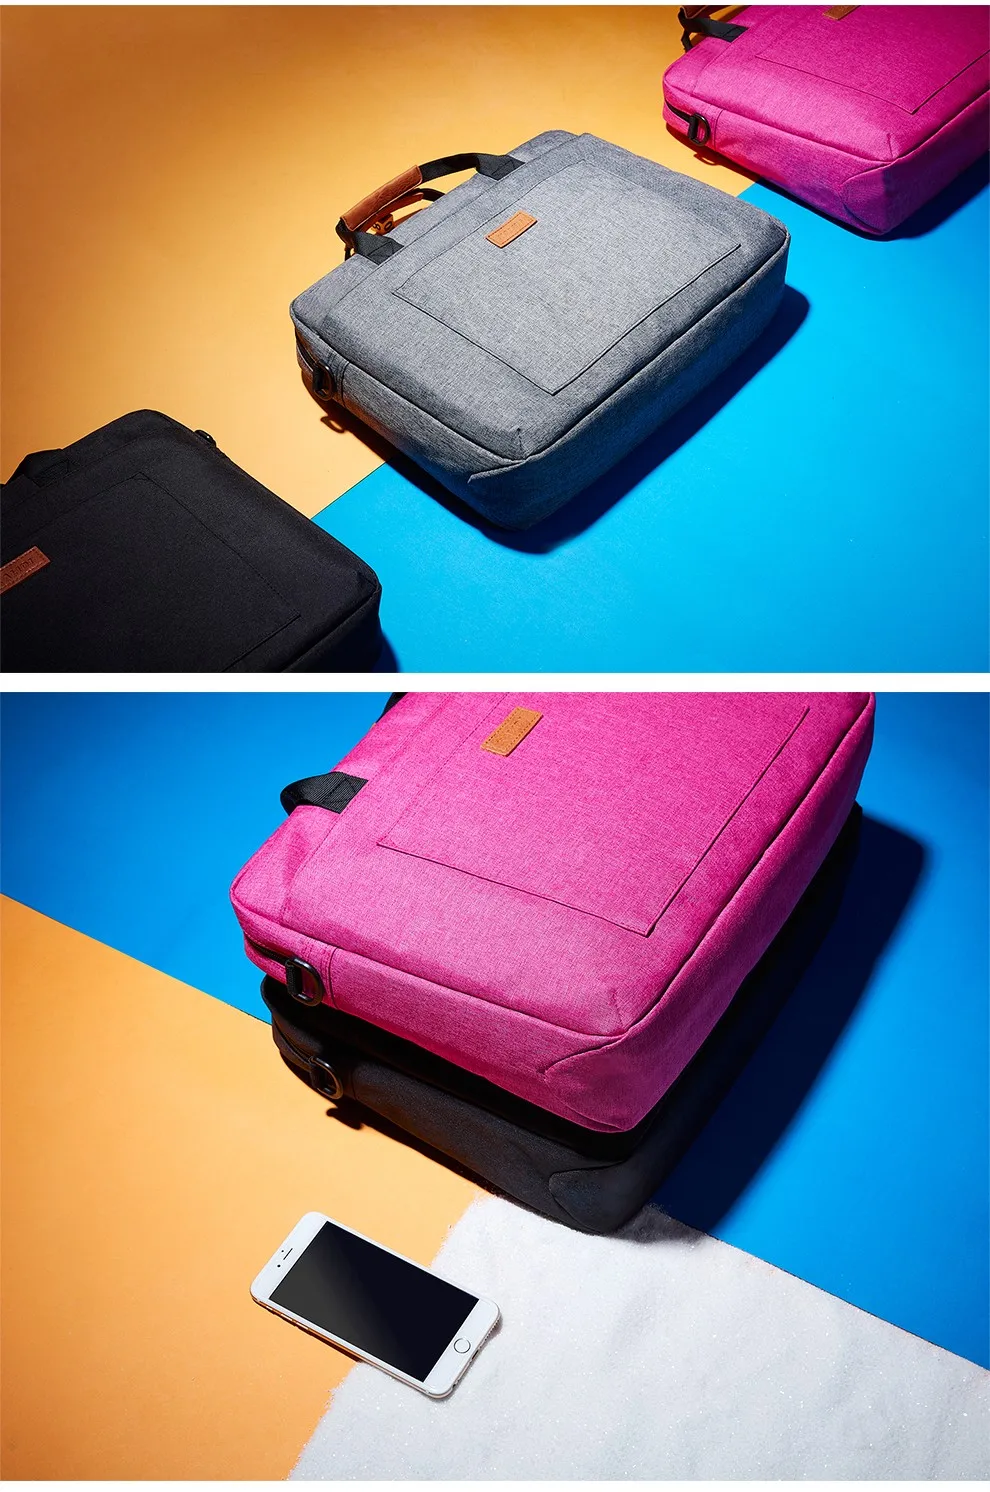 KALIDI сумка для ноутбука 13,3 15,6 17,3 дюймов непромокаемая сумка для ноутбука Macbook Air Pro 13 15 сумка на плечо сумка портфель сумка